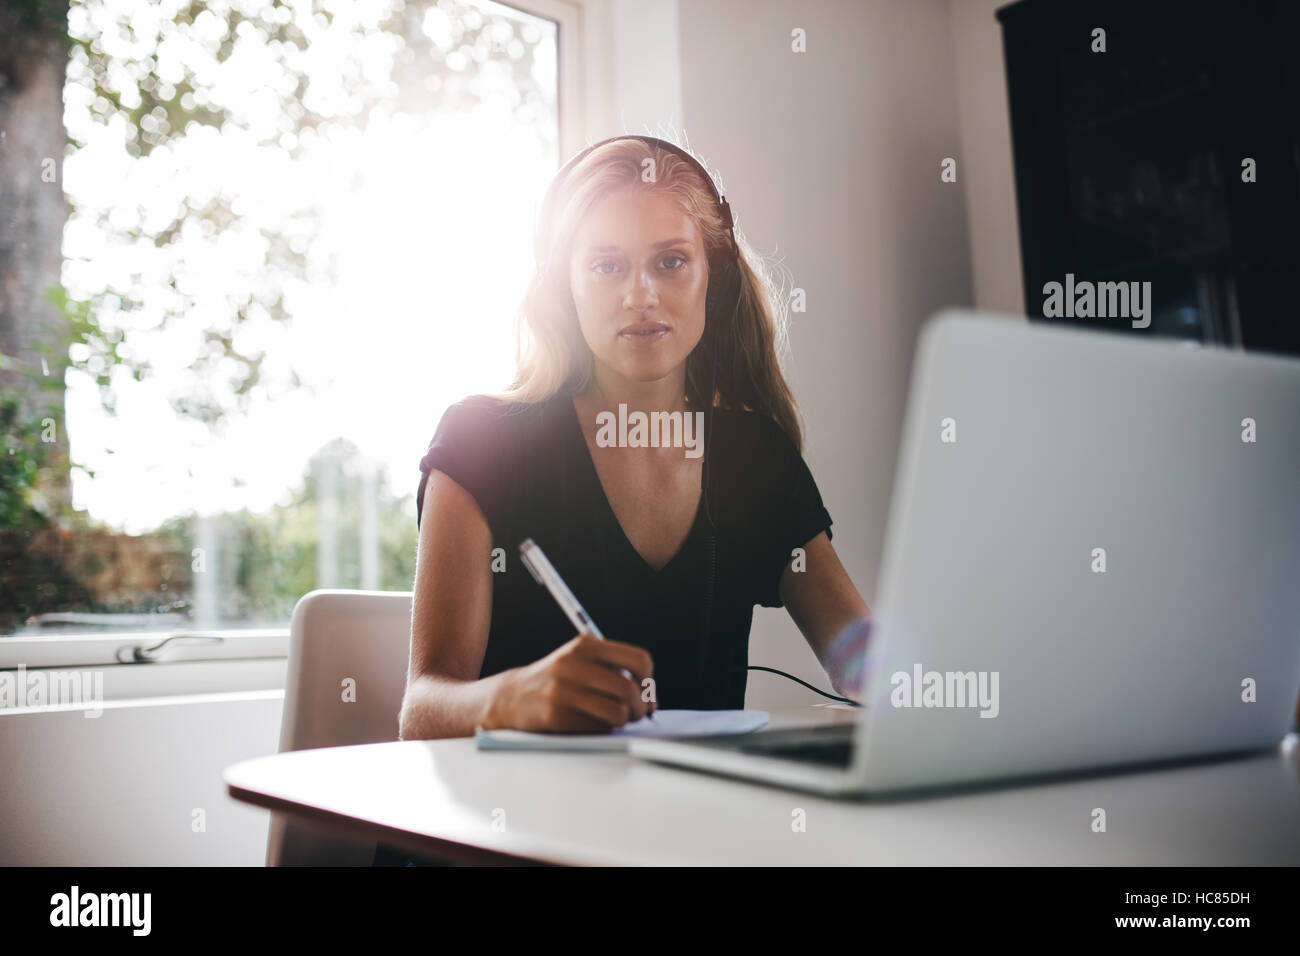 Portrait de jeune femme assise dans la cuisine avec un casque note par écrit. L'étude de femme au foyer avec ordinateur portable. Banque D'Images